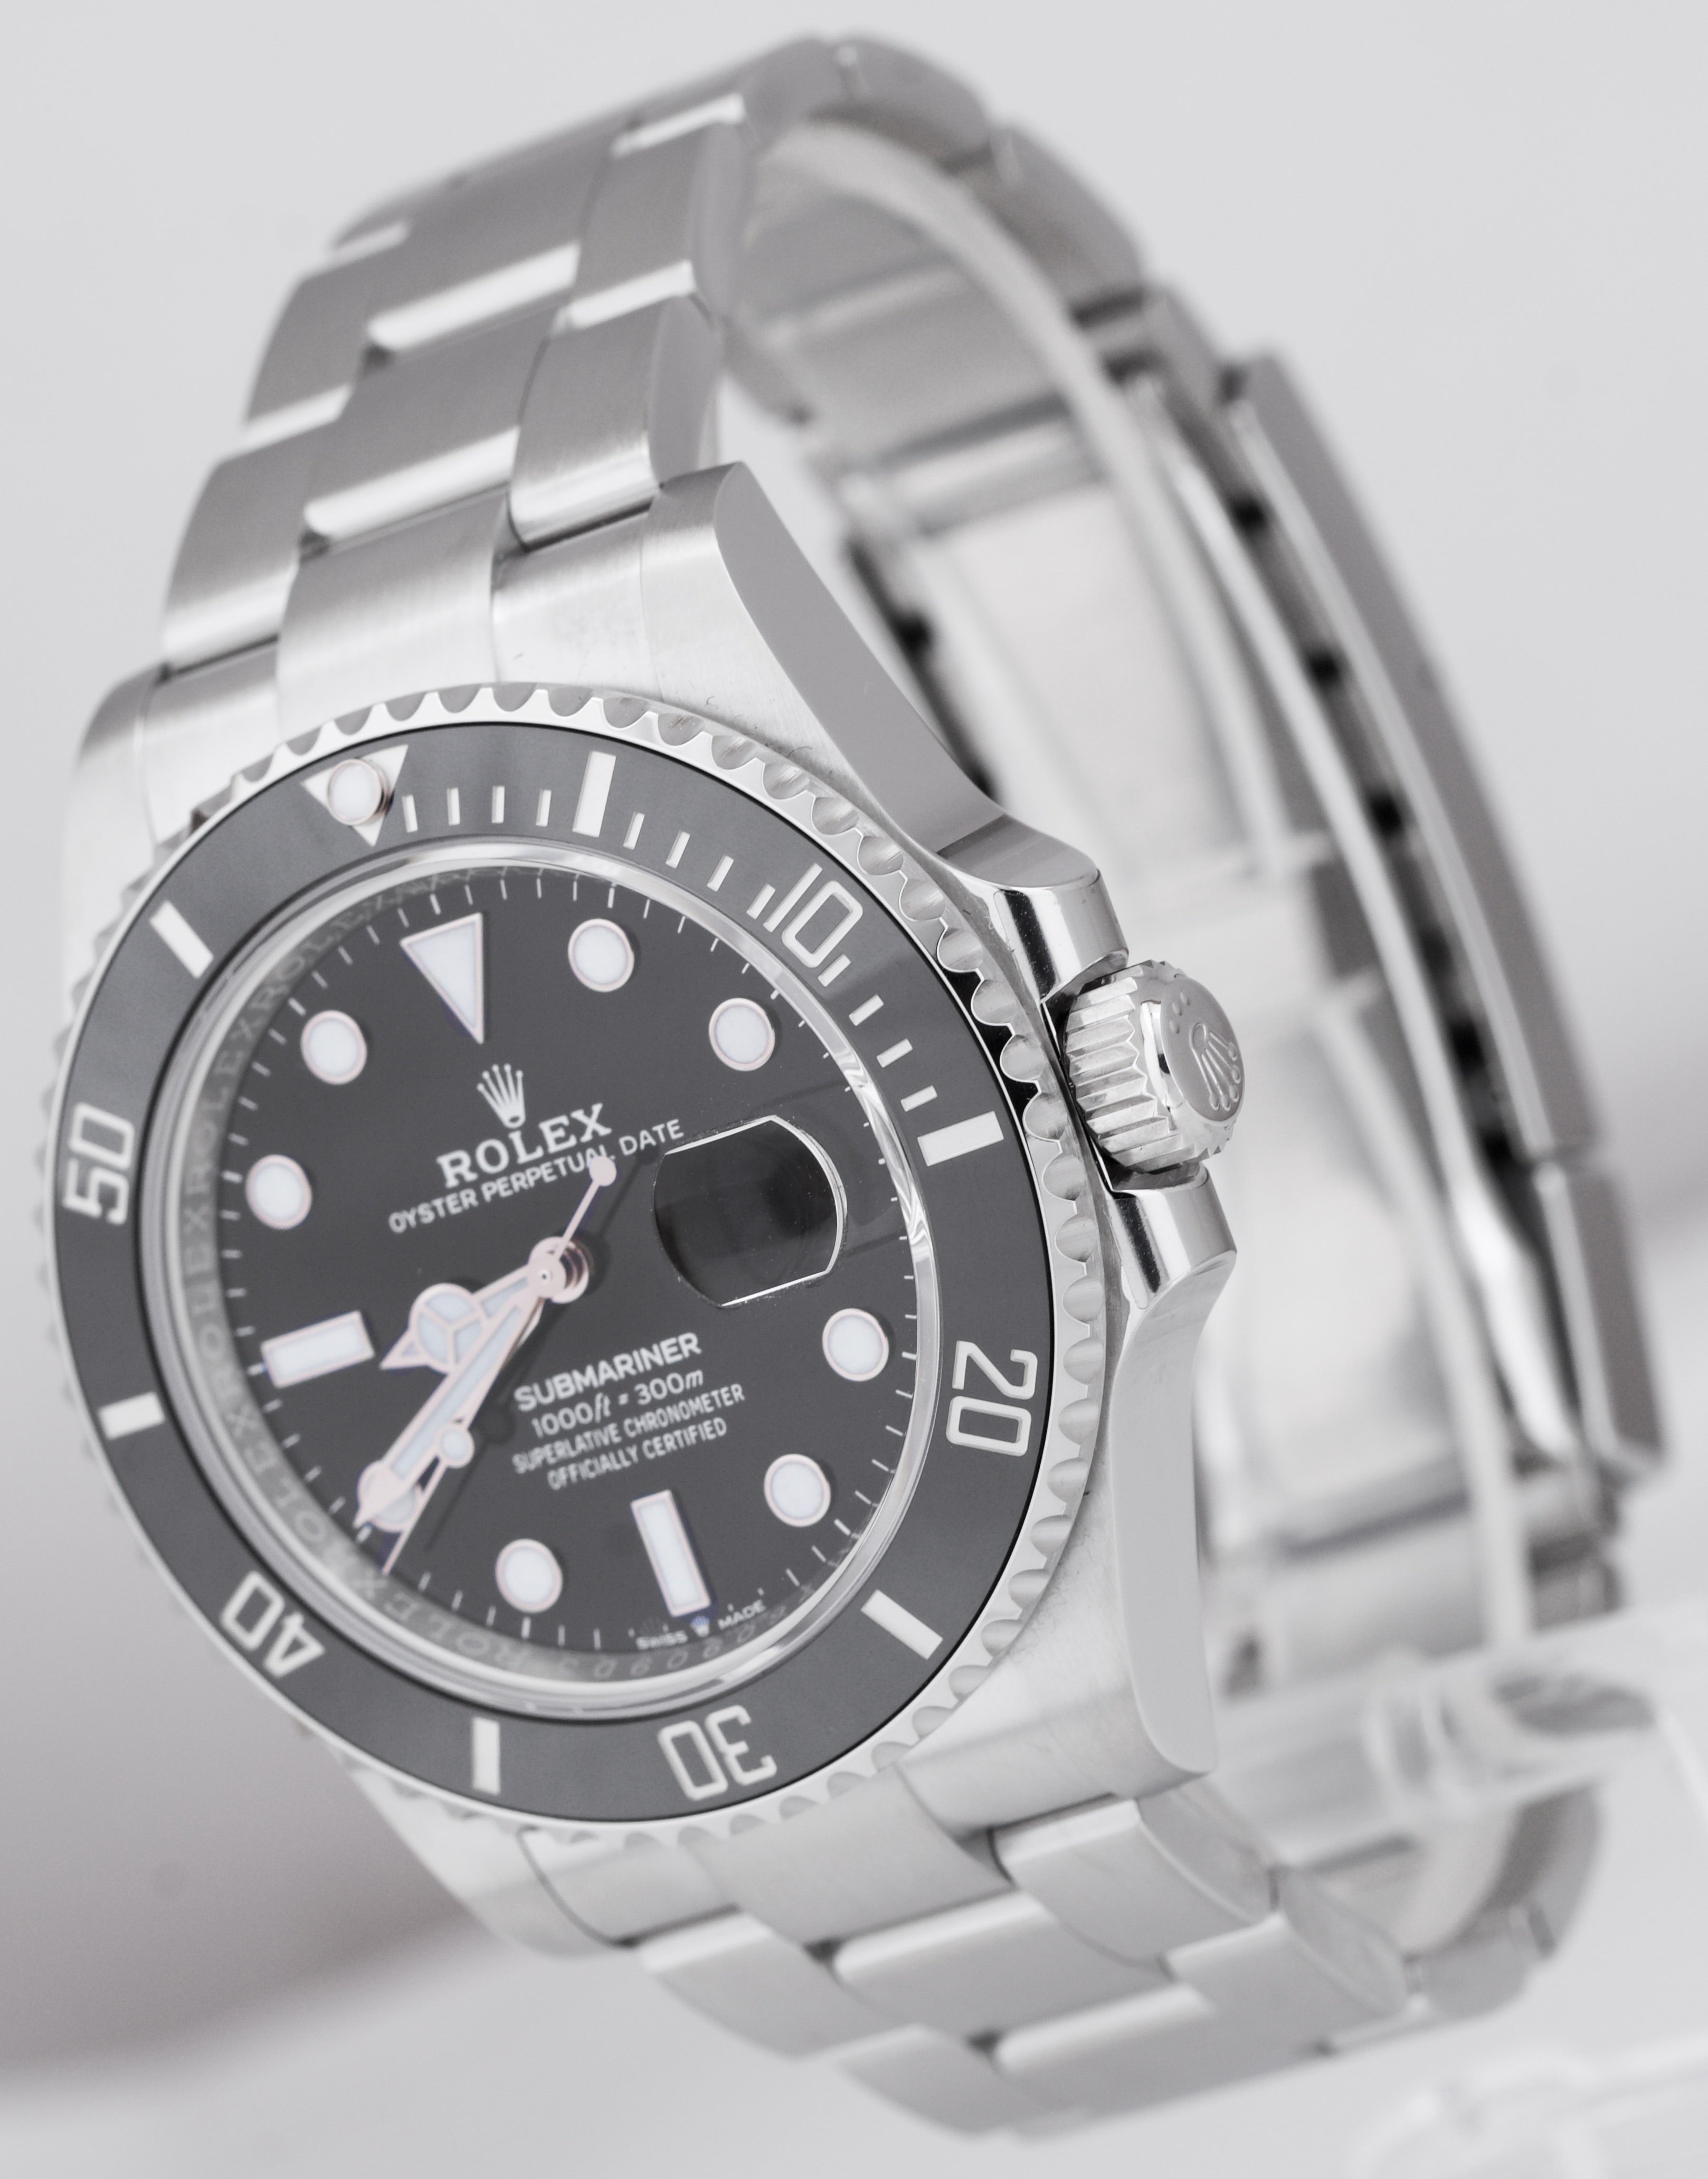 BRAND NEW 2021 CARD Rolex Submariner 41 Date Steel Black Ceramic Watch 126610 LN